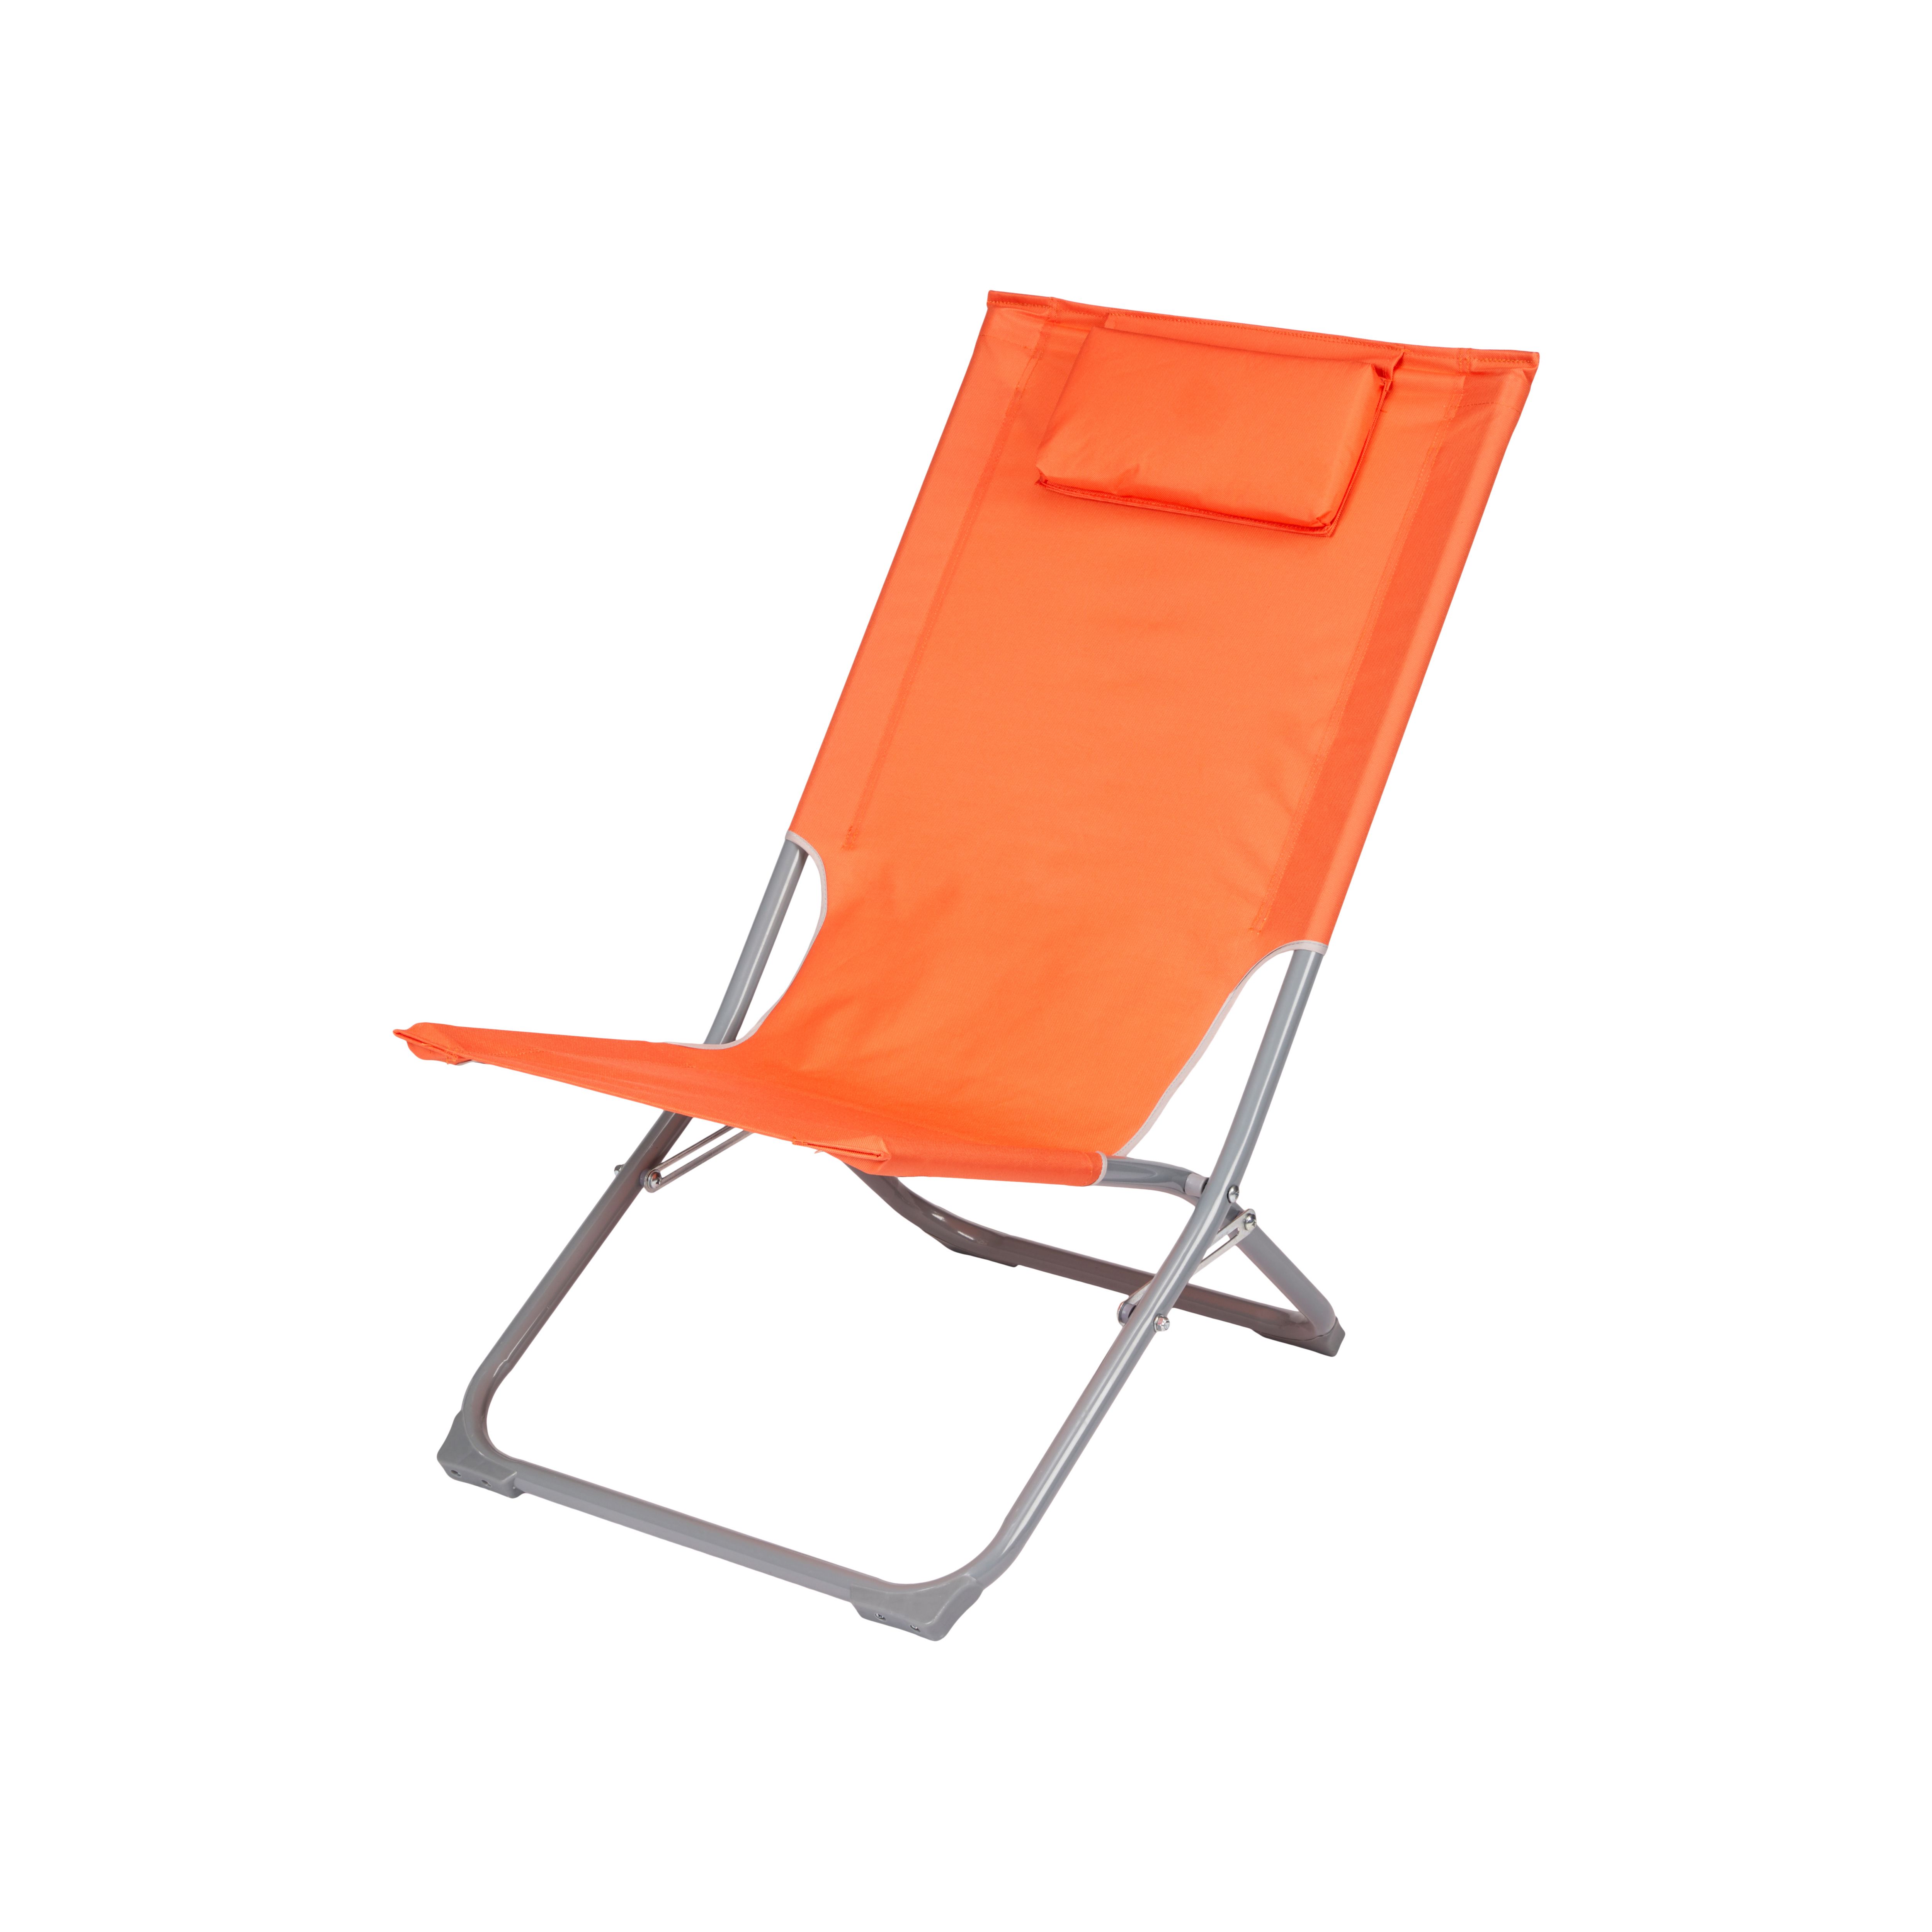 Curacao Mandarin orange Metal Beach Chair | DIY at B&Q